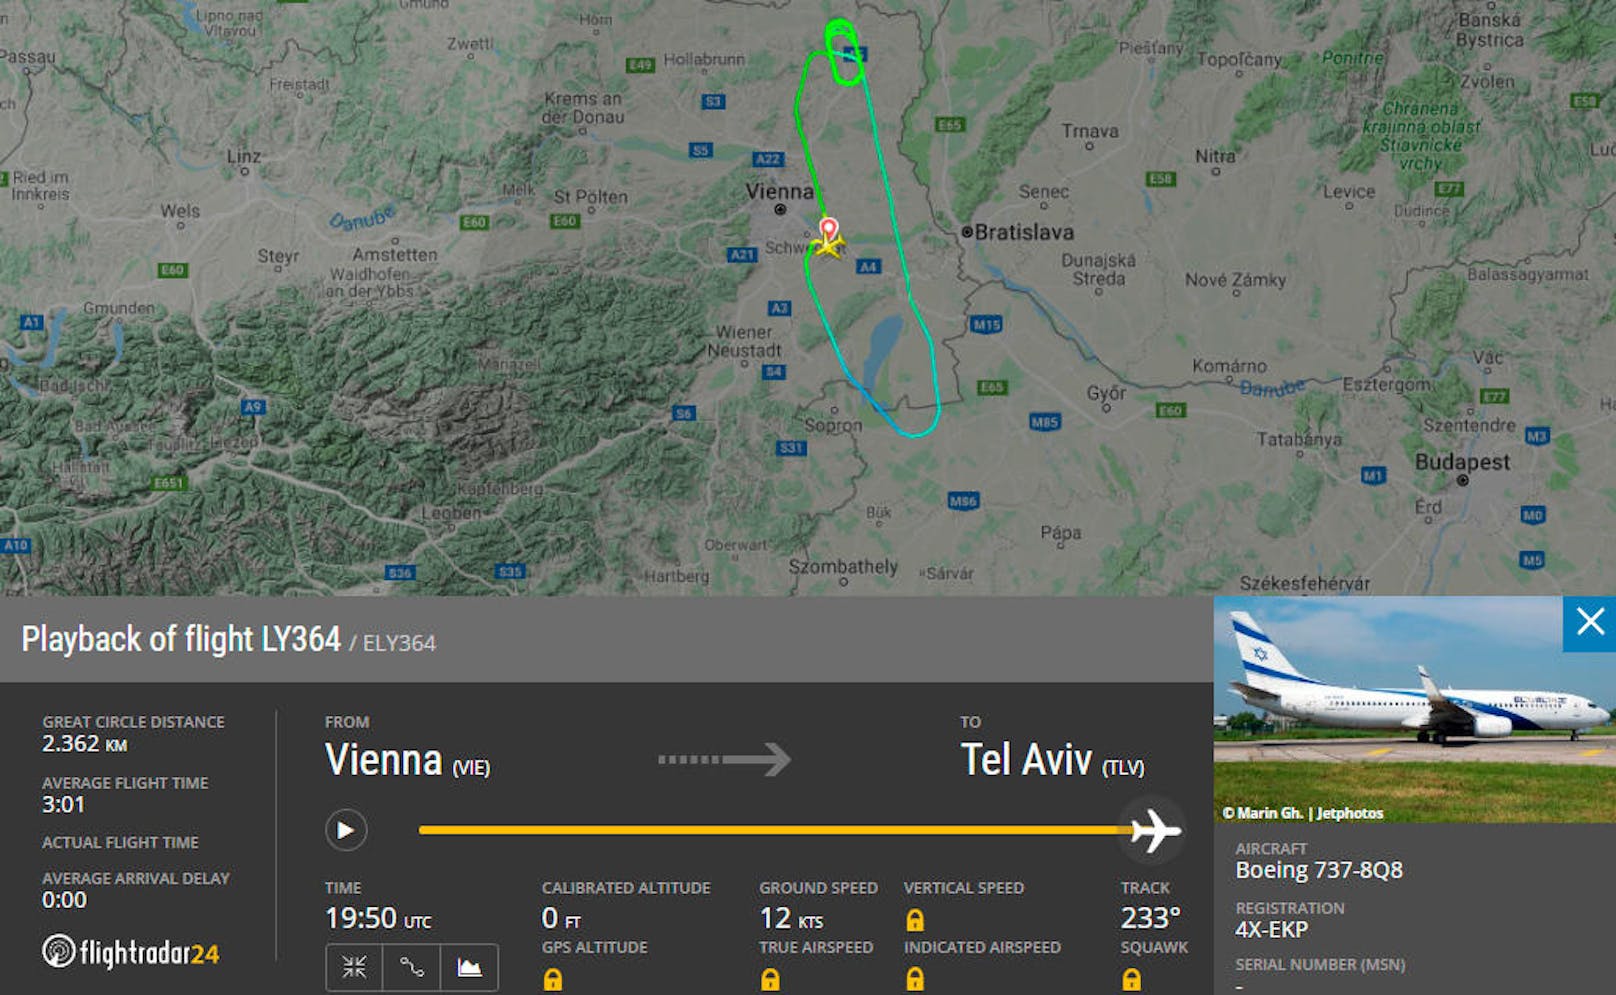 Flug LY364 der israelischen El Al musste am 27. August wegen technischer Probleme nach Wien umkehren.